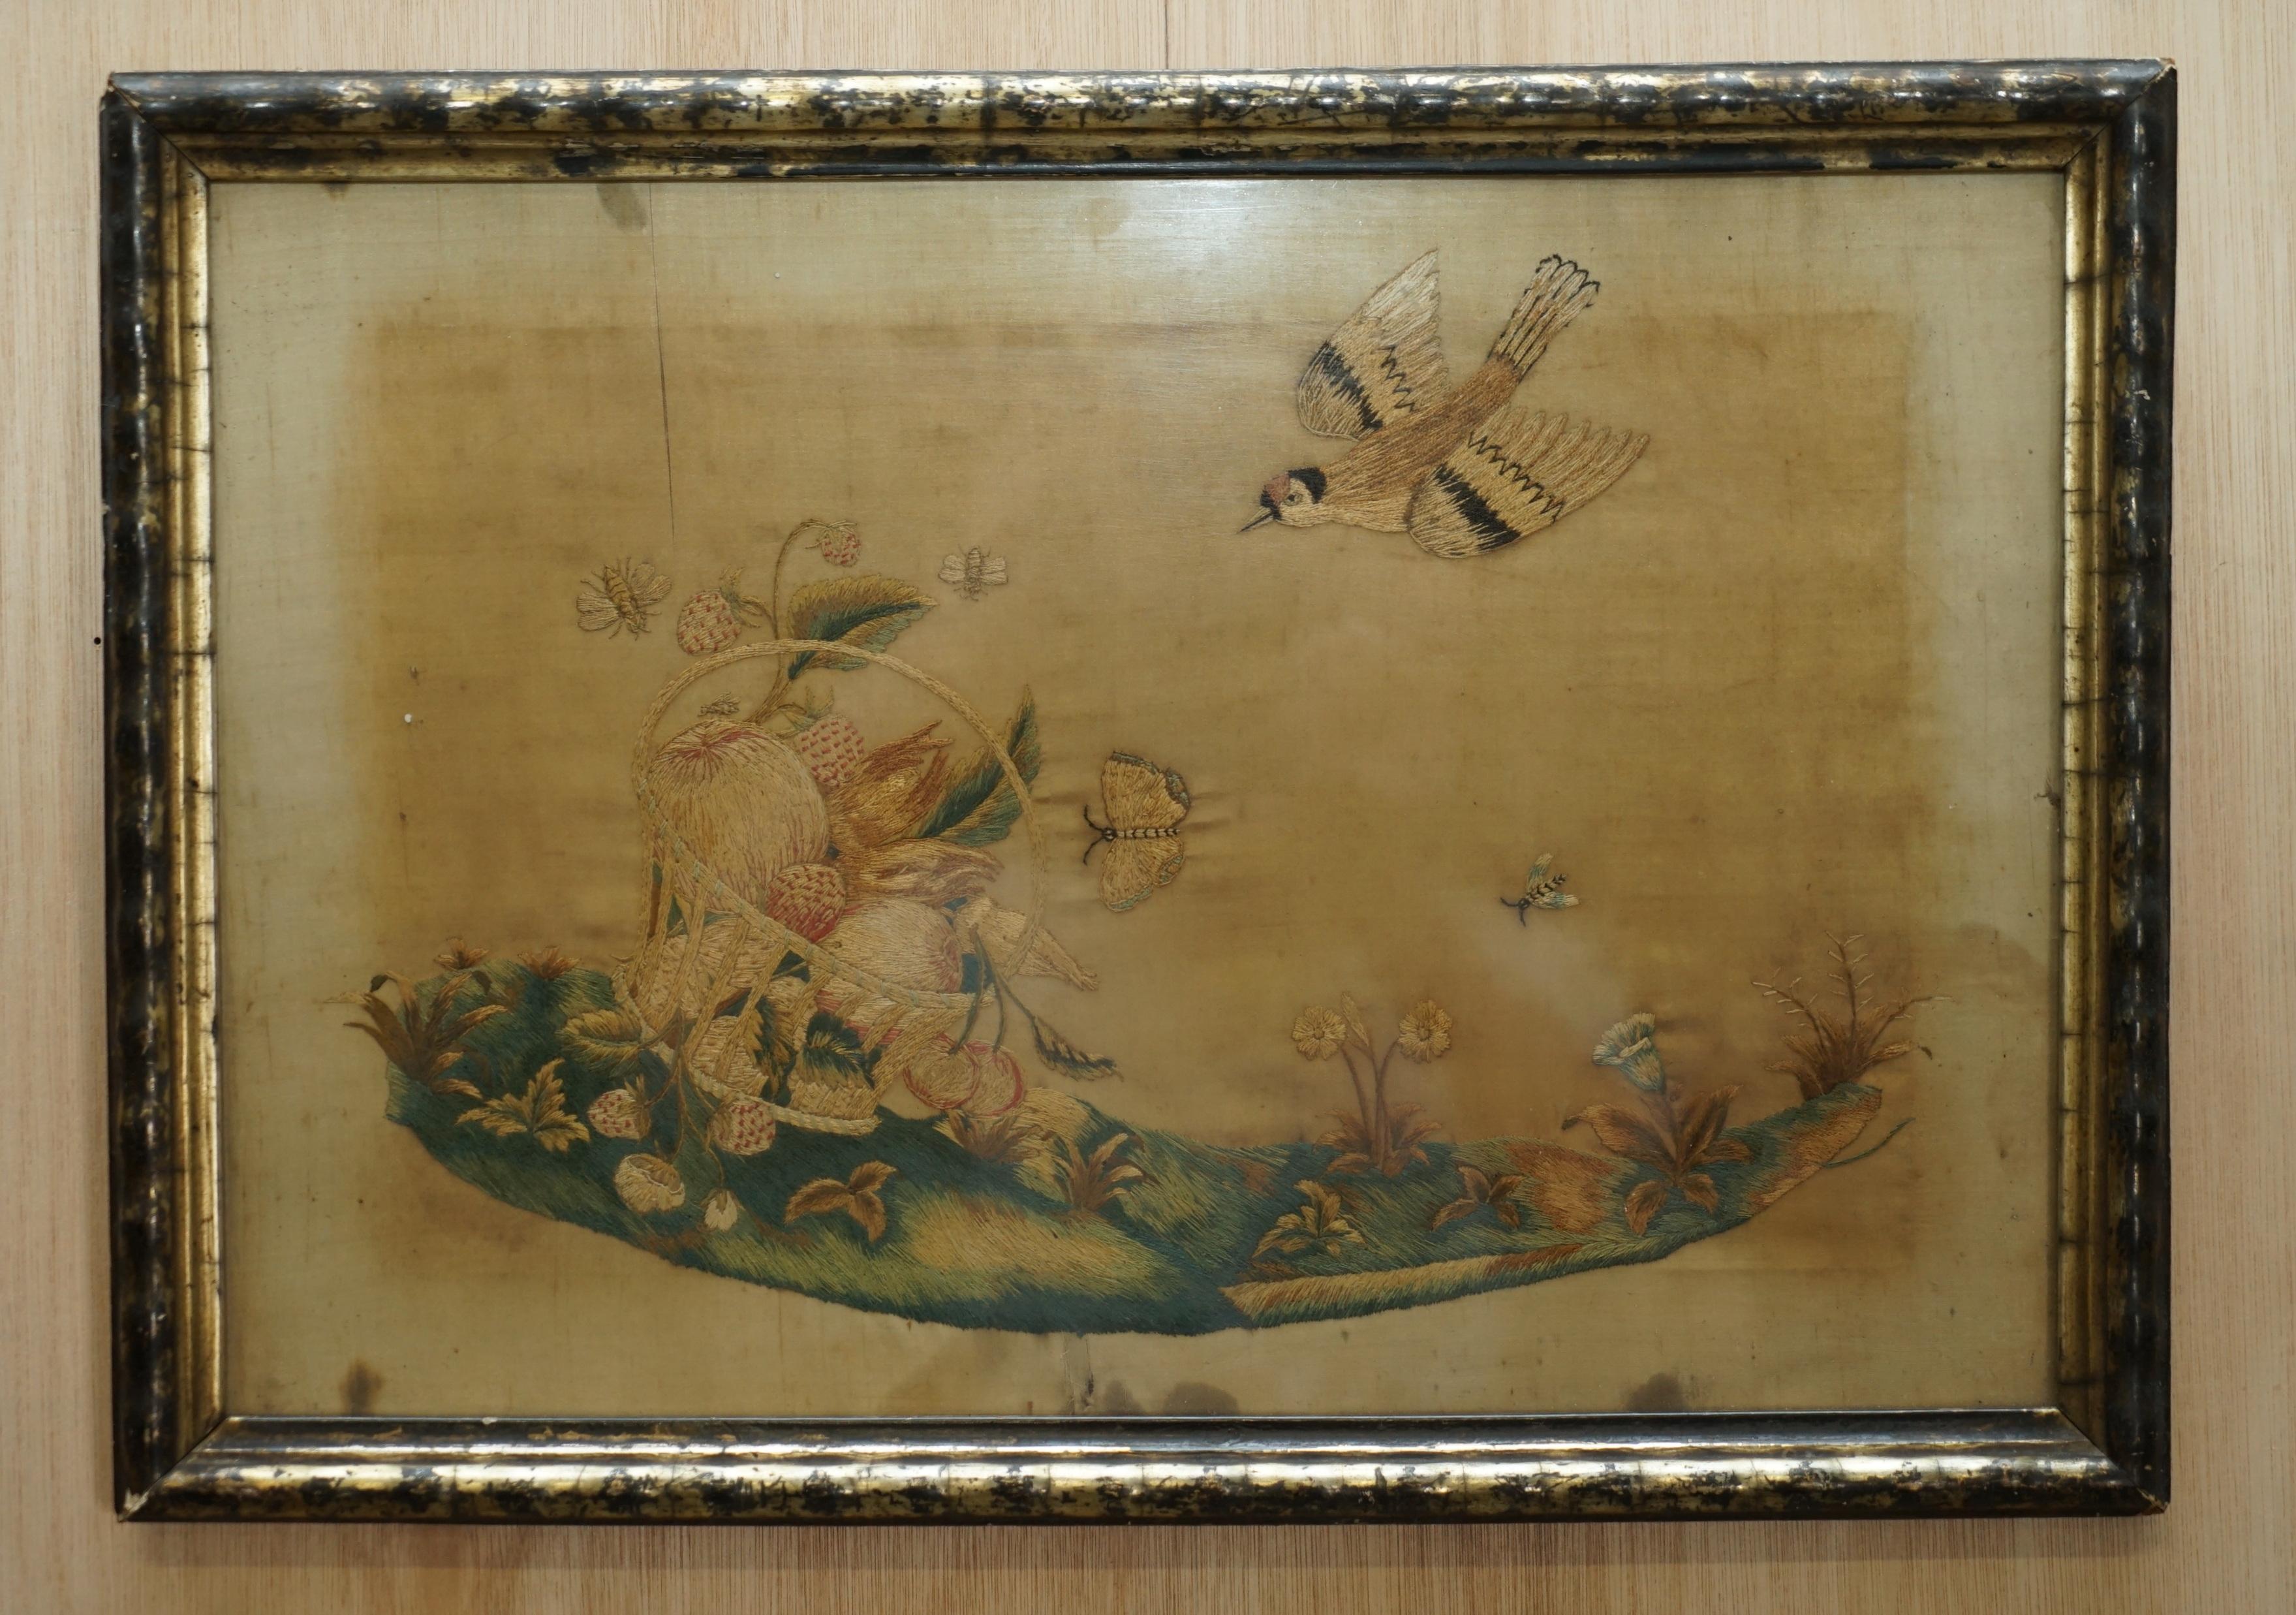 Nous sommes ravis d'offrir à la vente cette paire de tableaux originaux en soie brodée datant d'environ 1850 et représentant des oiseaux et des fruits 

Une paire très belle et décorative, qui a bien vieilli et qui a l'air d'avoir plus de 170 ans